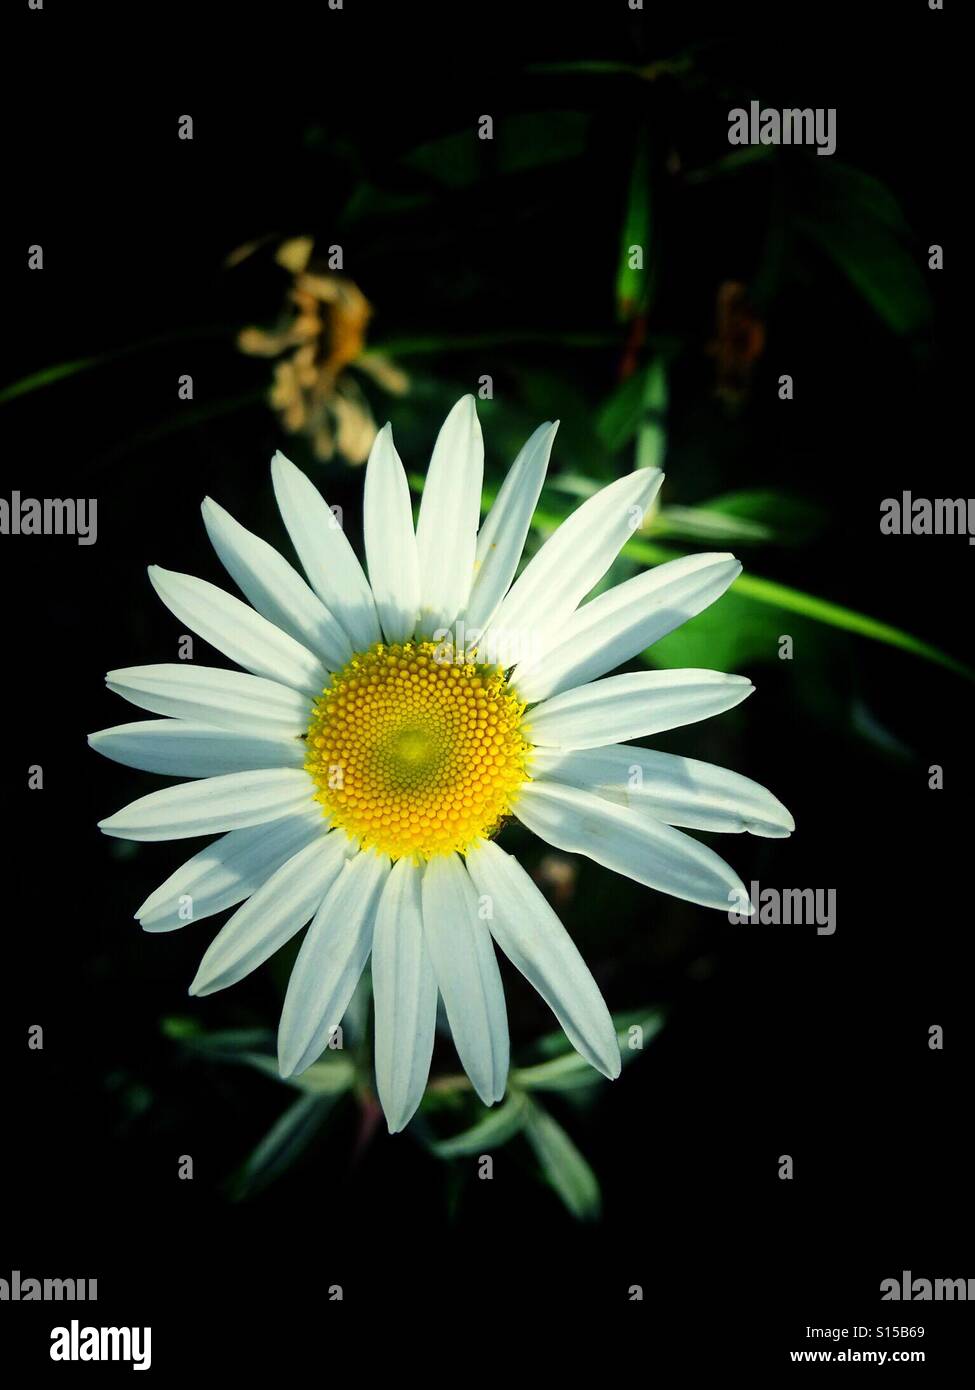 Gänseblümchen, schlicht und einfach. Ein einzelnes Flowerhead mit weißen Blütenblättern und einem gelben Zentrum. Stockfoto